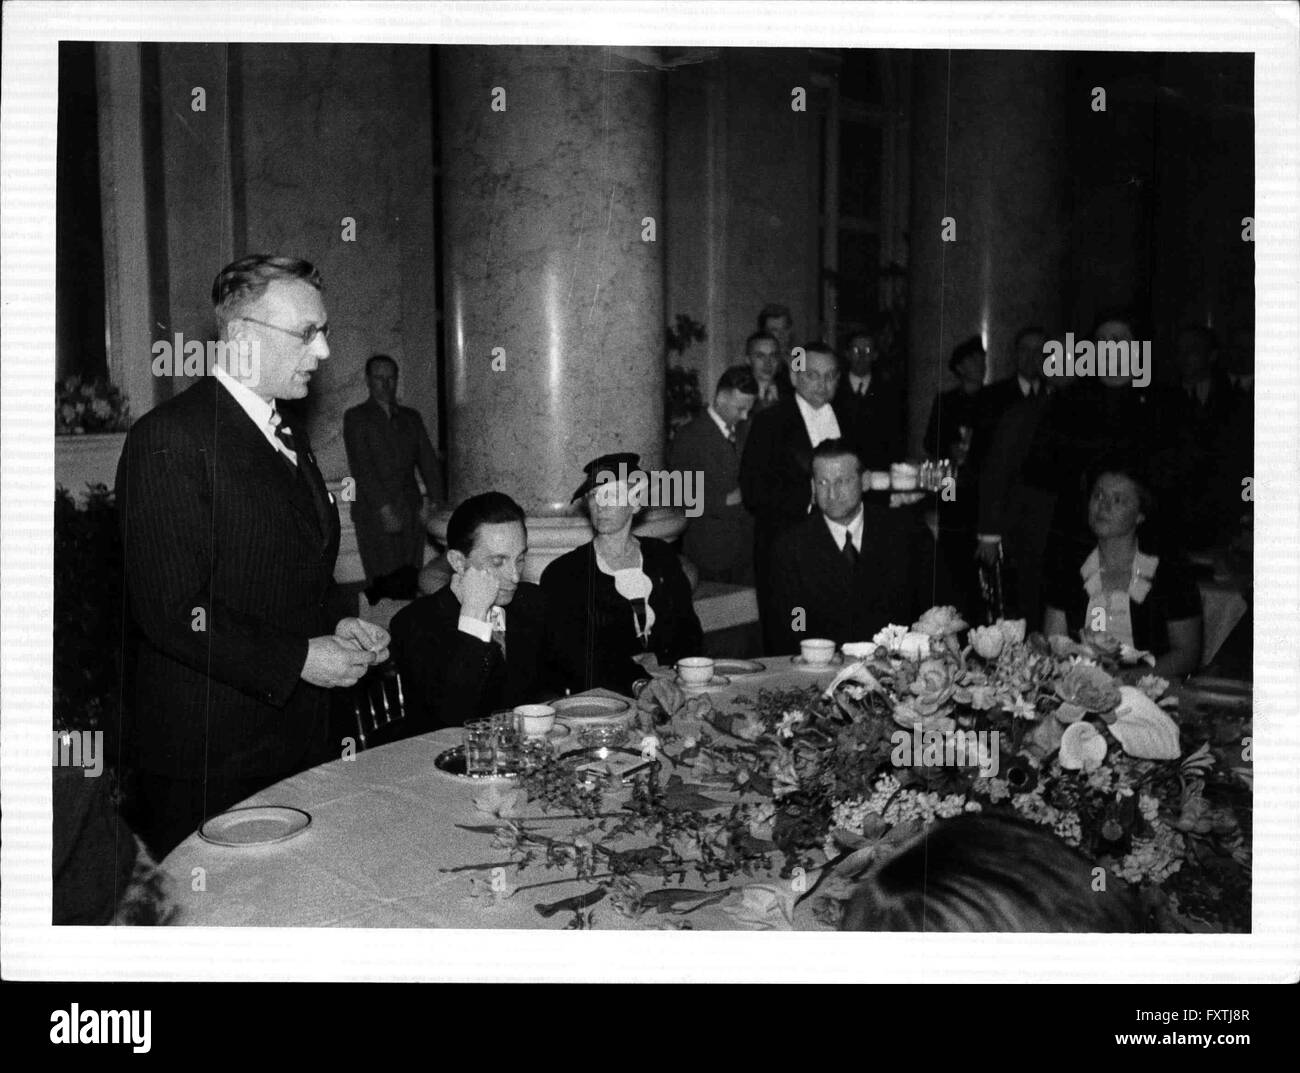 Empfang der Film- und Wiens Bühnenschaffenden durch Reichsminister Goebbels Foto Stock